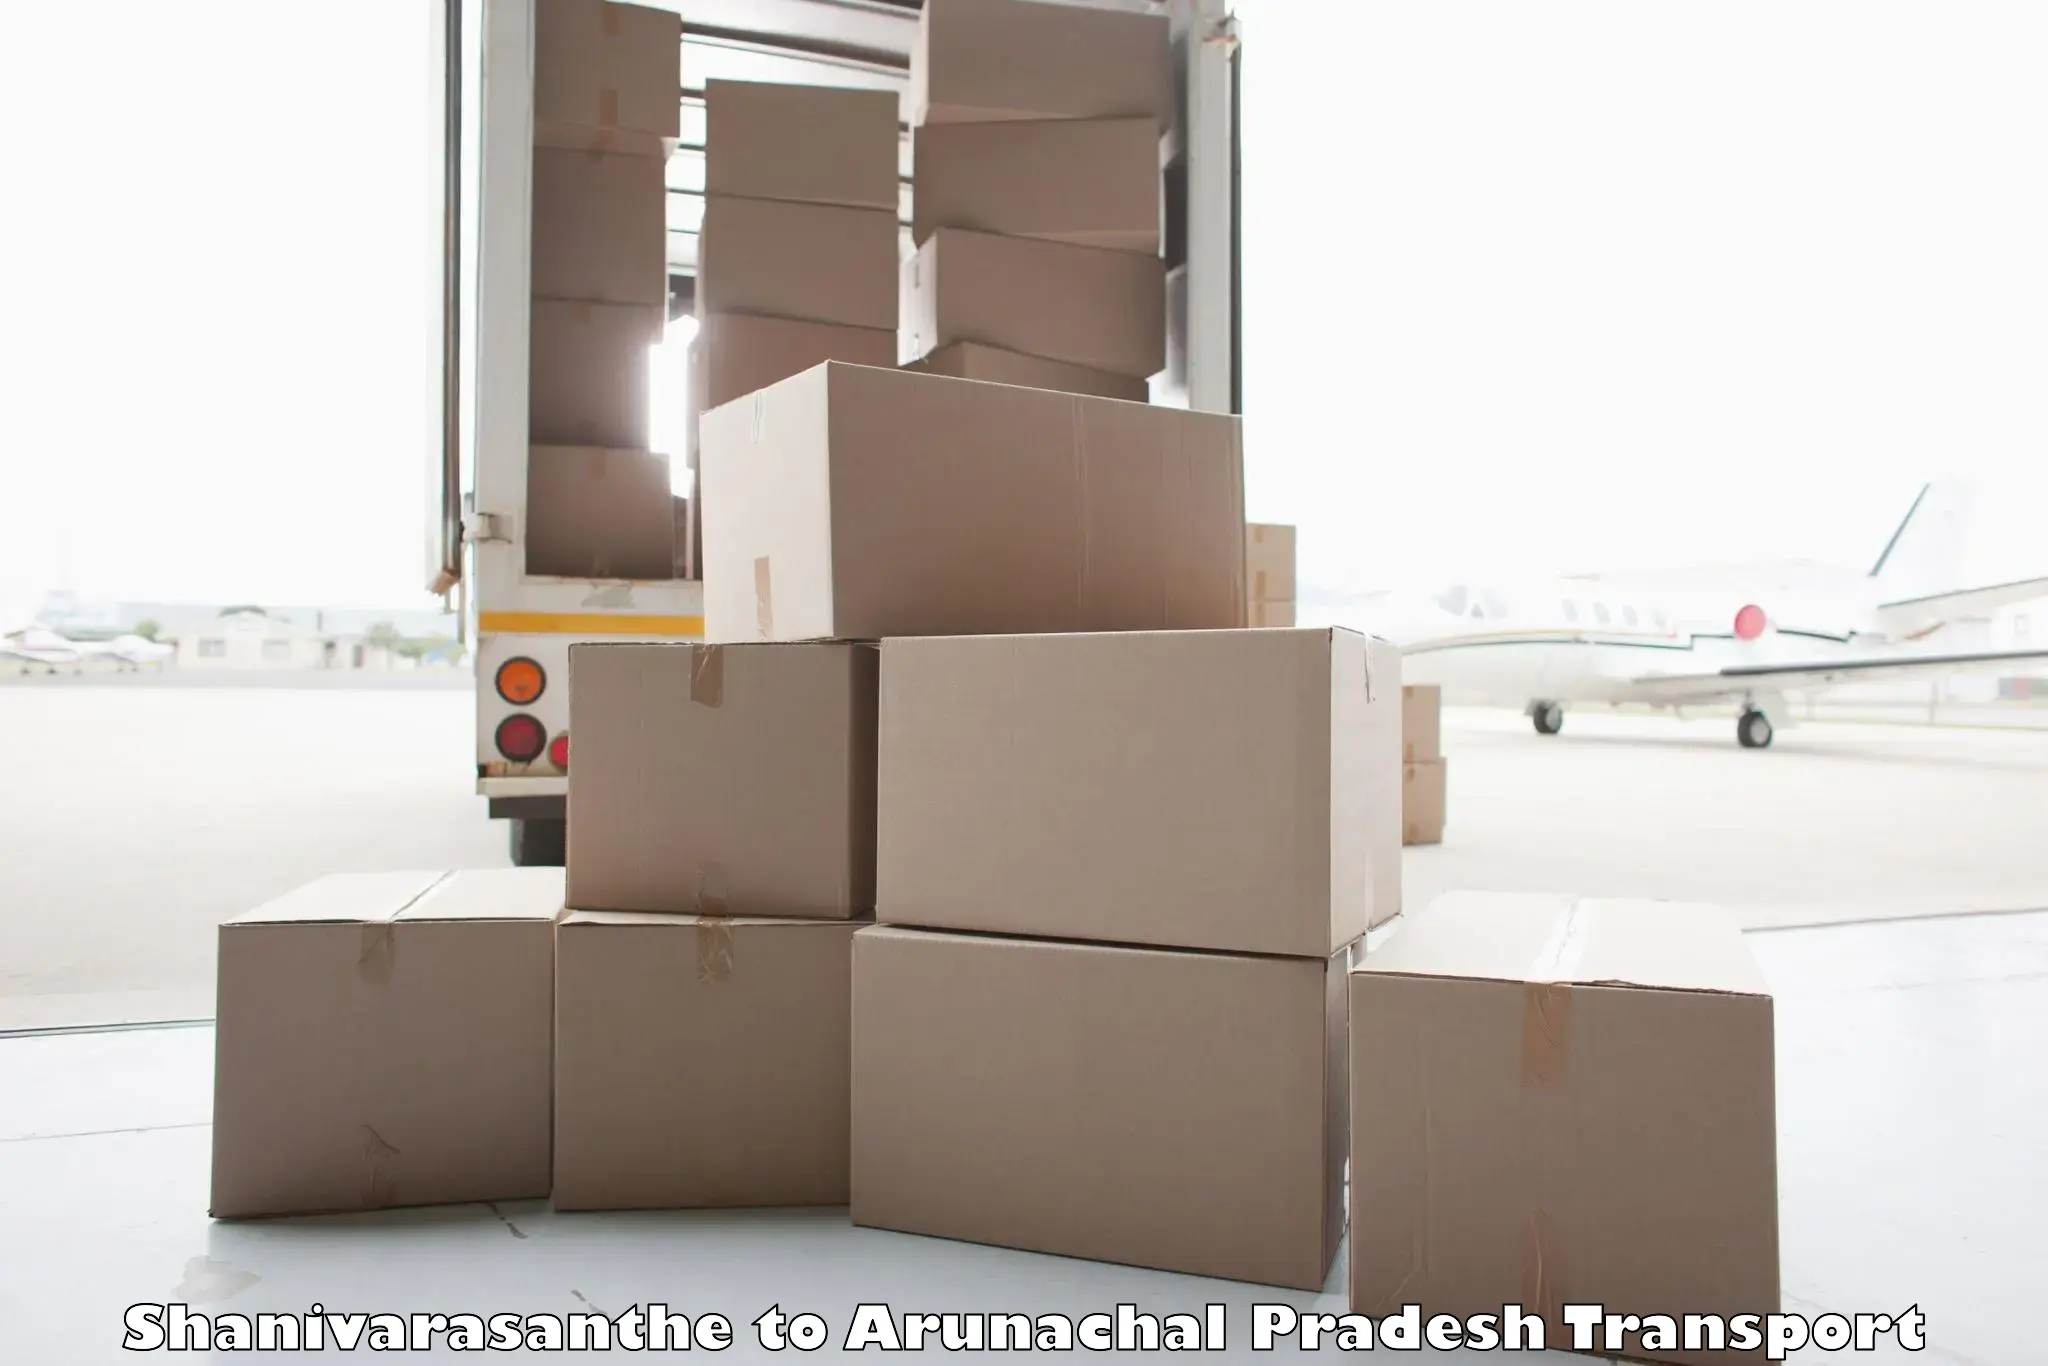 Cargo transport services Shanivarasanthe to Arunachal Pradesh